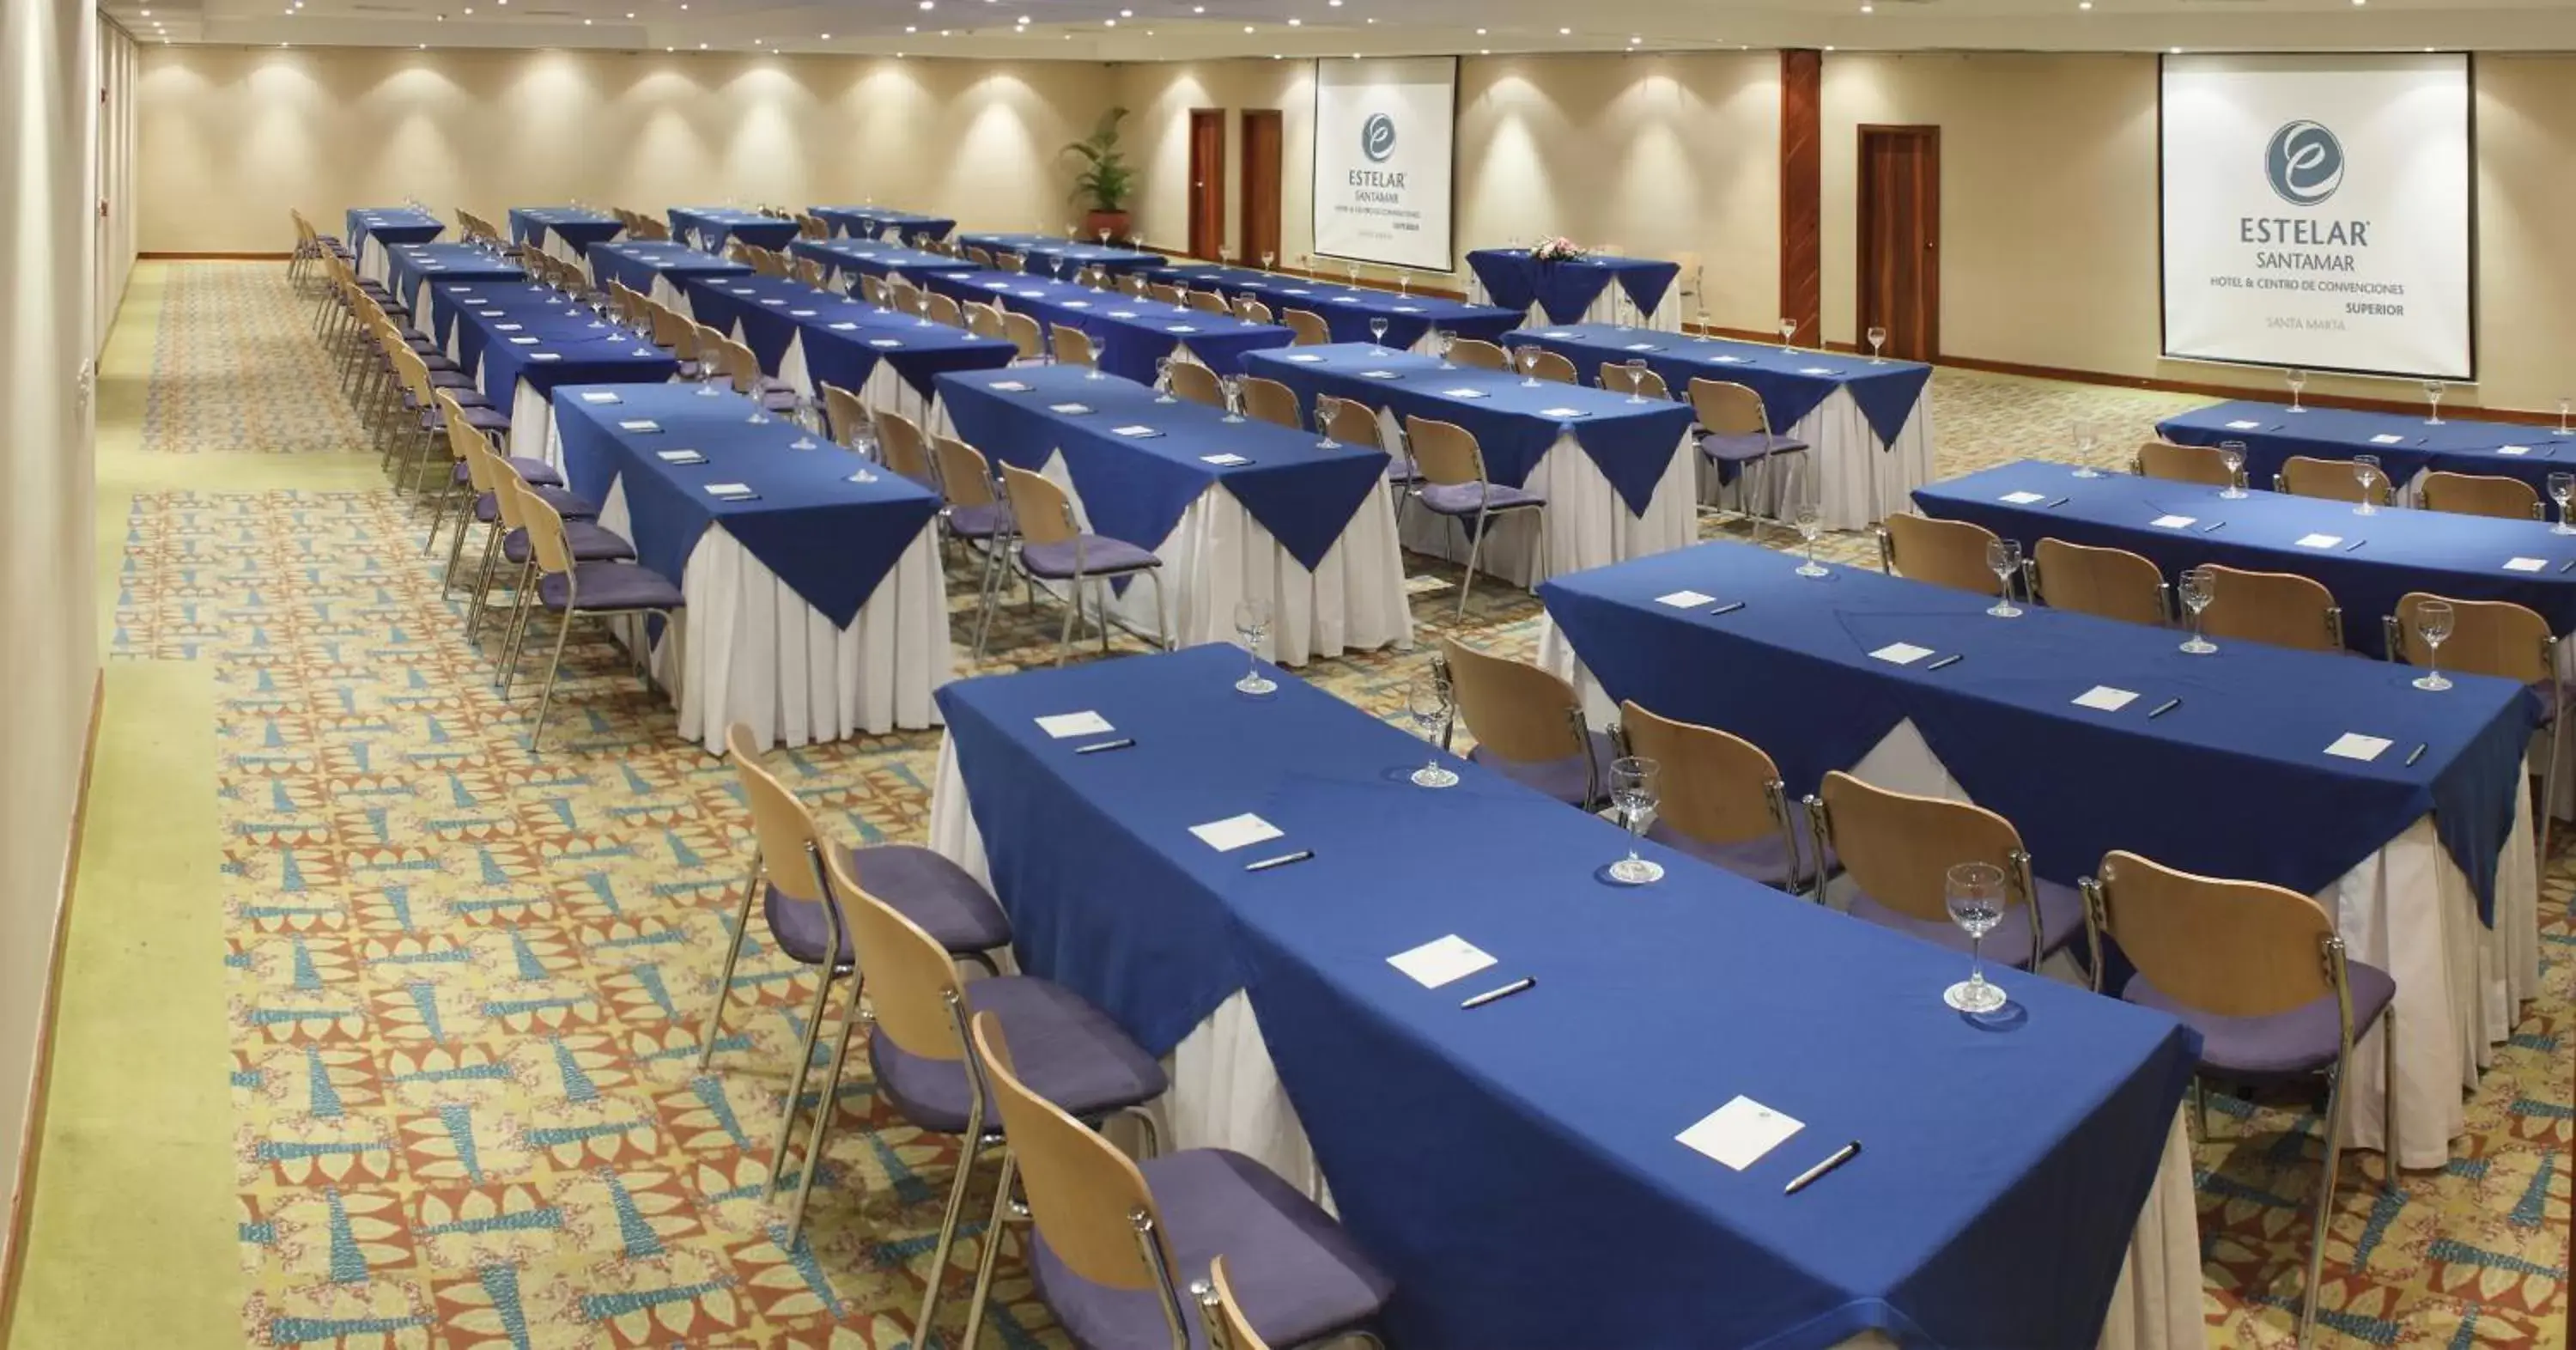 Meeting/conference room in Estelar Santamar Hotel & Centro De Convenciones